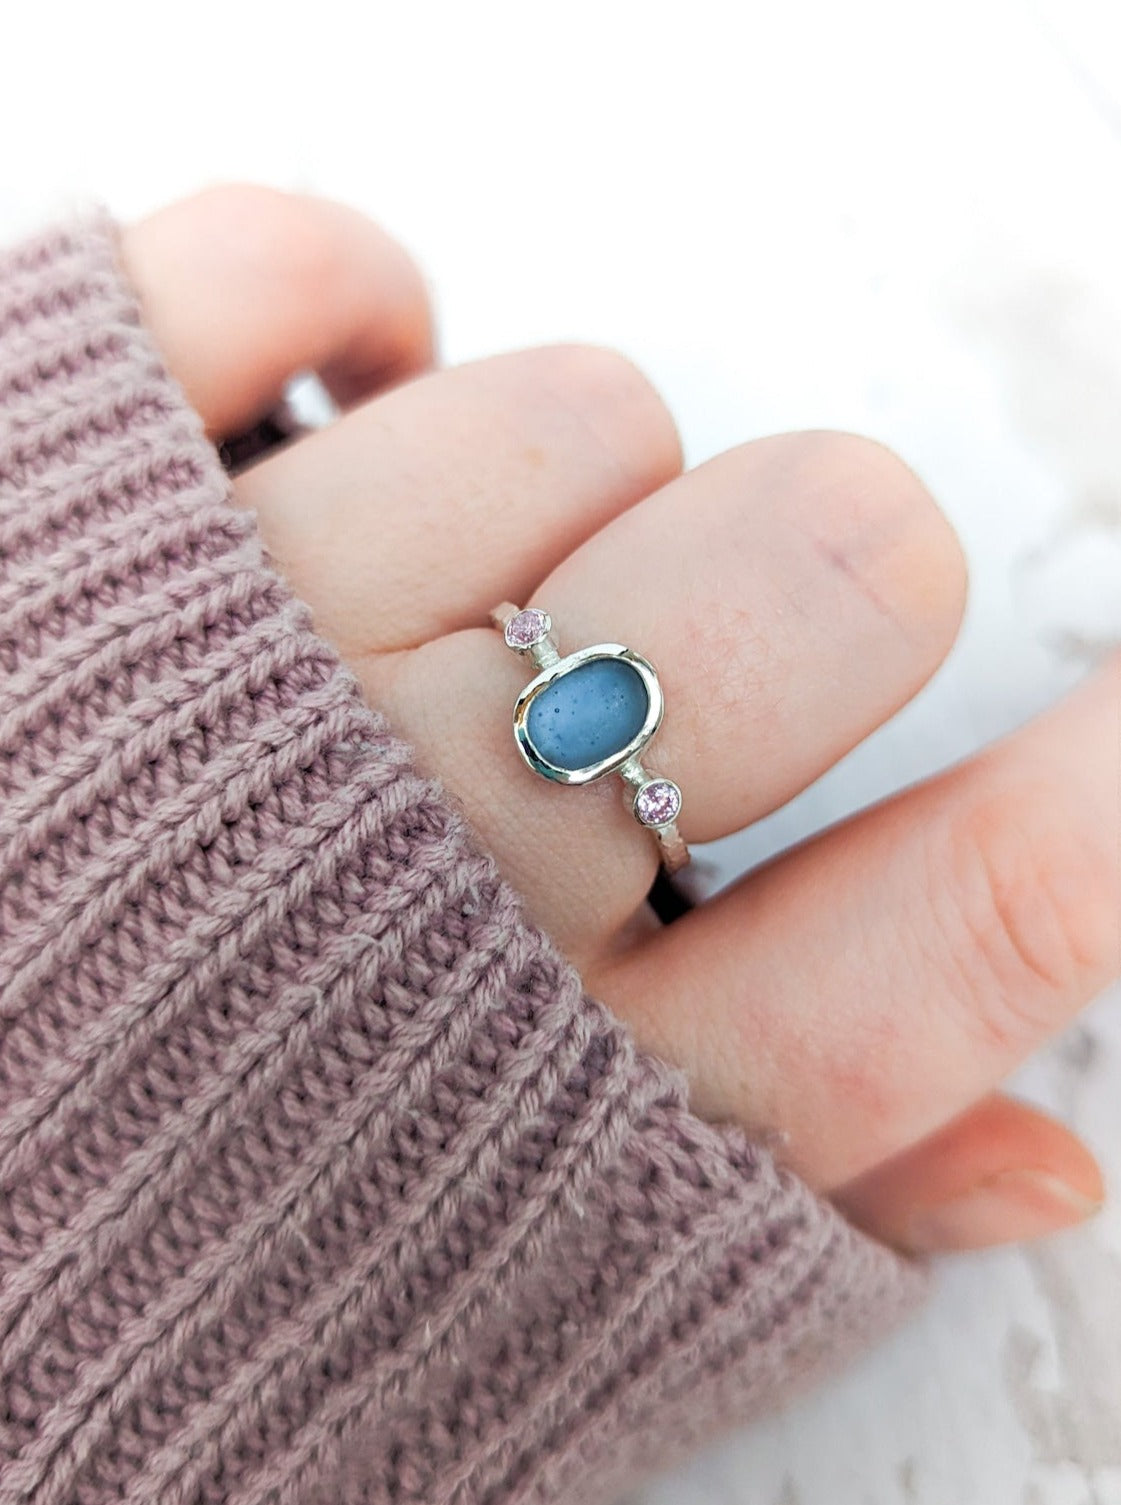 Ocean blue beach glass ring